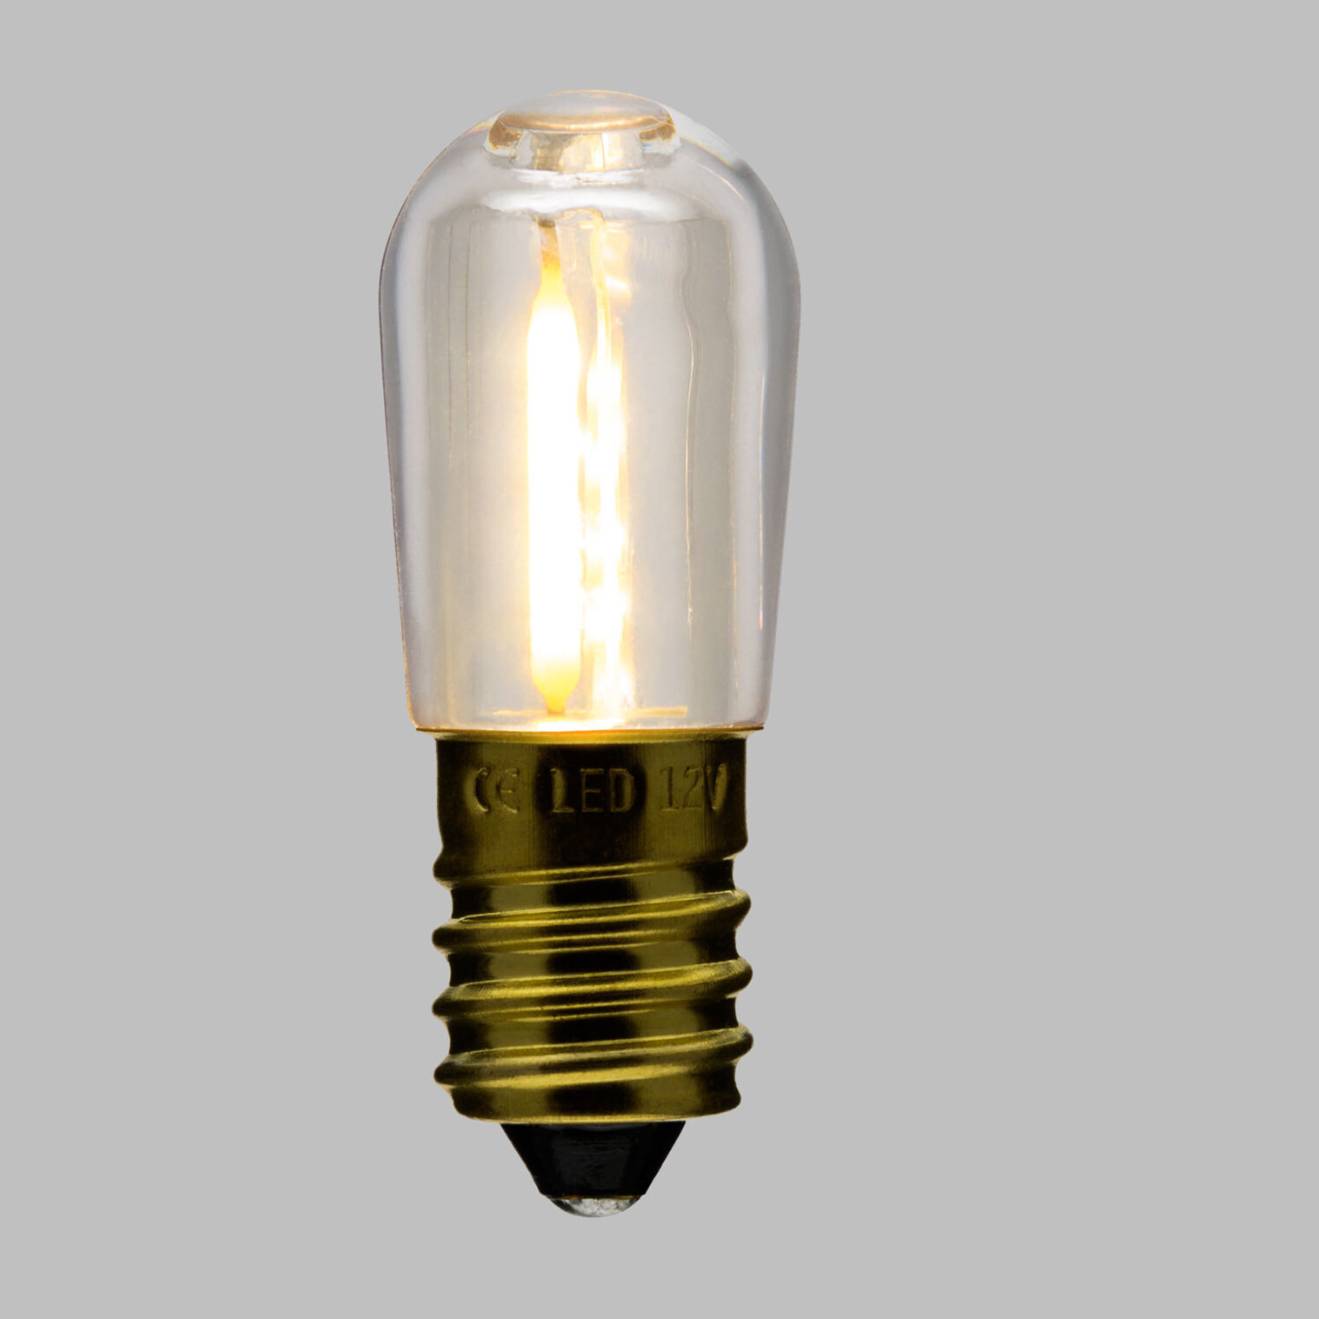 Lot de 20 ampoules E14 Guinguette plastique filament 12V blanc chaud 0,15W